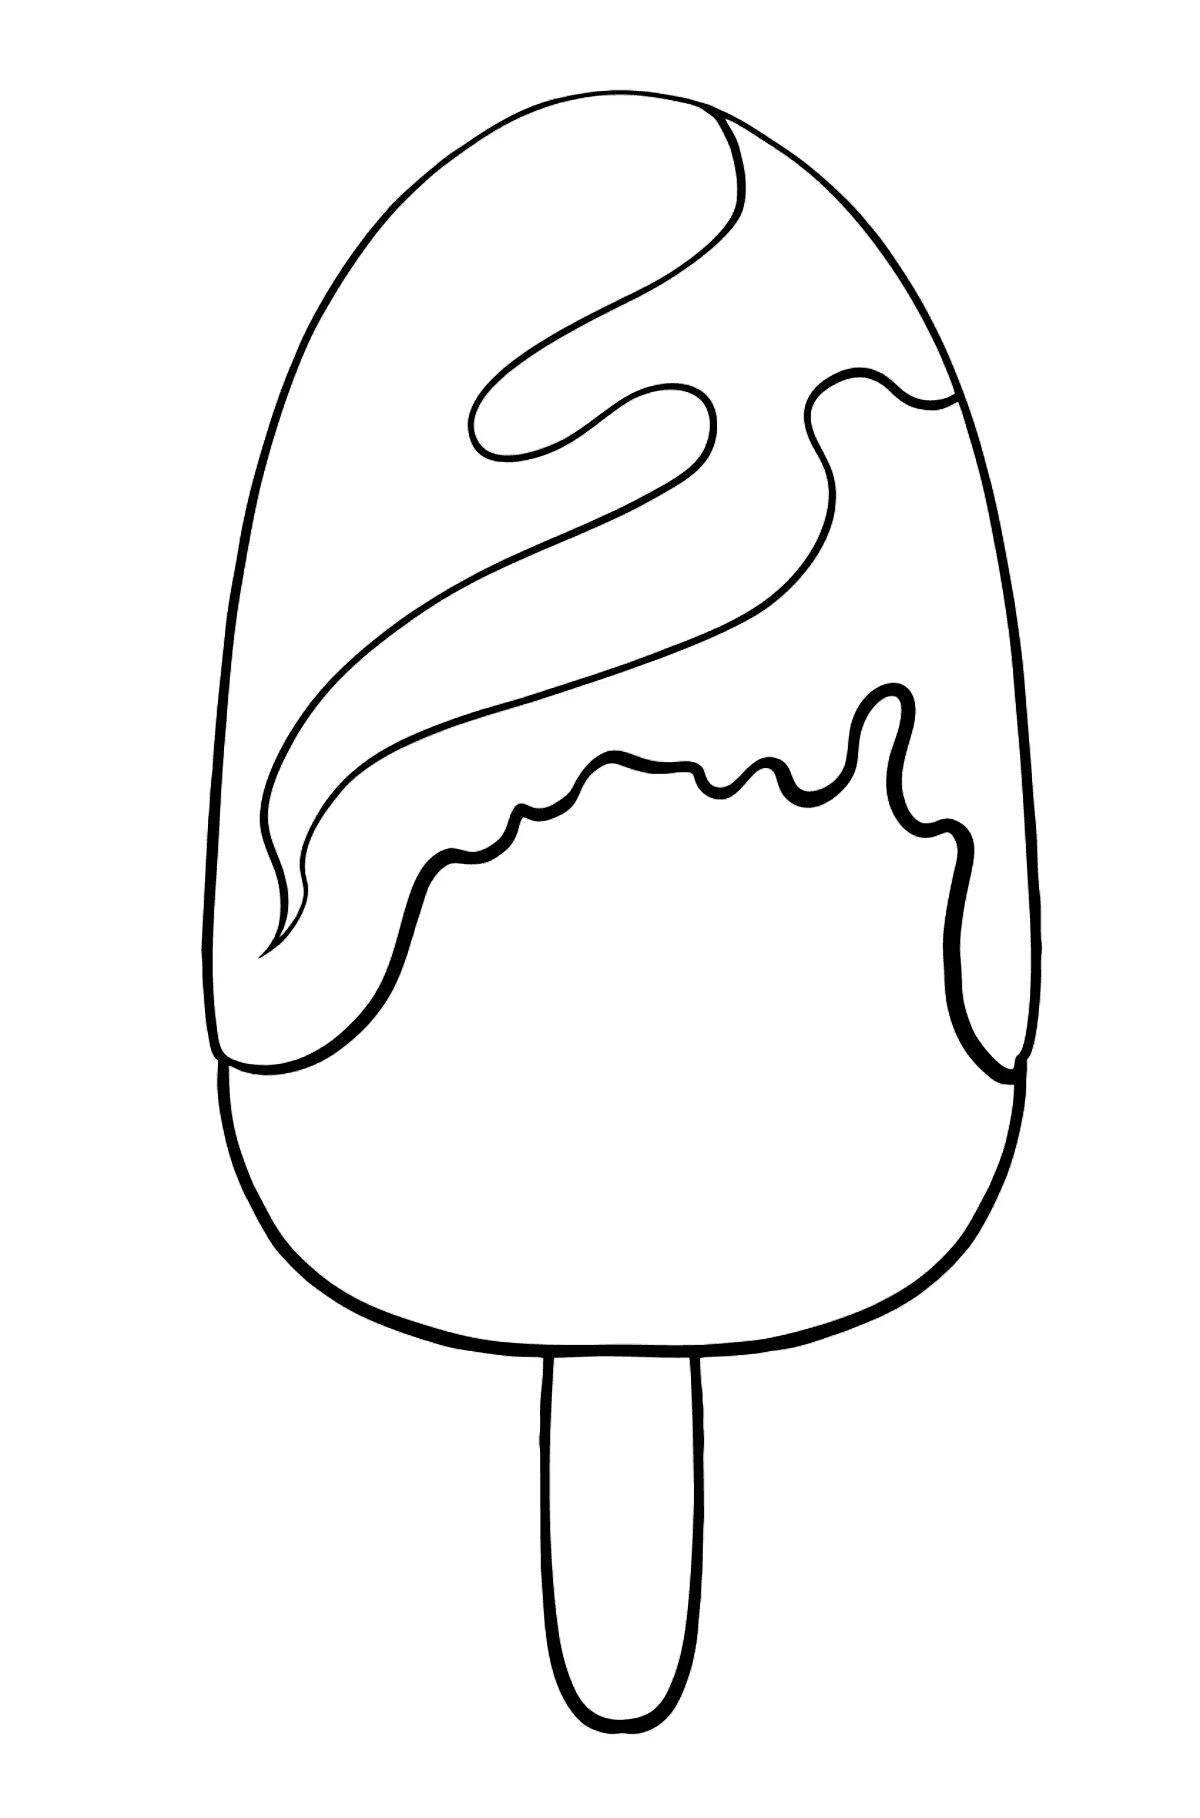 Цветная маска для мороженого раскраска